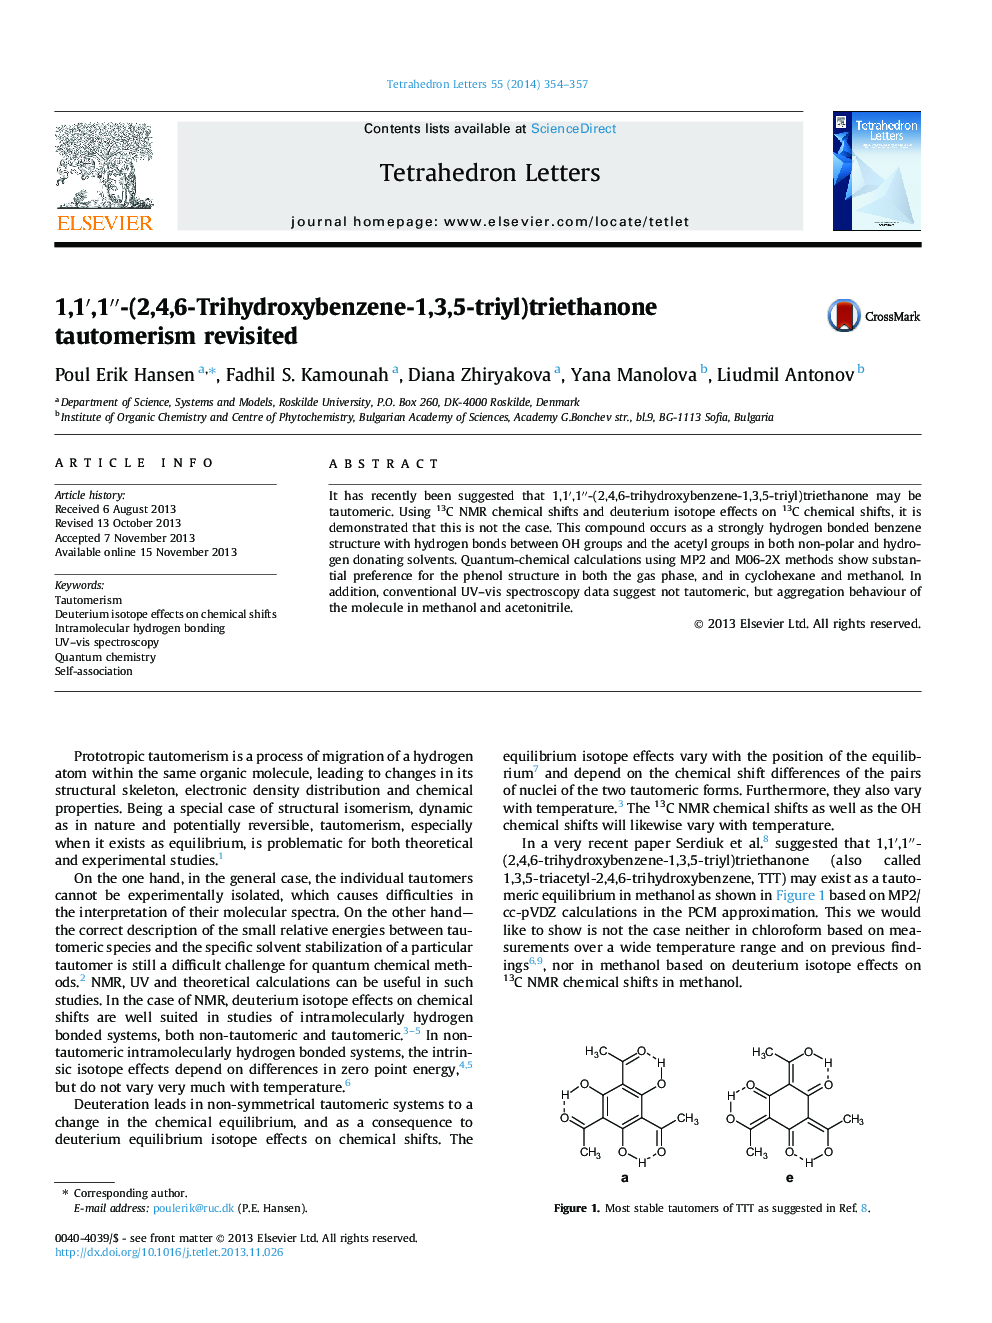 1,1â²,1â²â²-(2,4,6-Trihydroxybenzene-1,3,5-triyl)triethanone tautomerism revisited